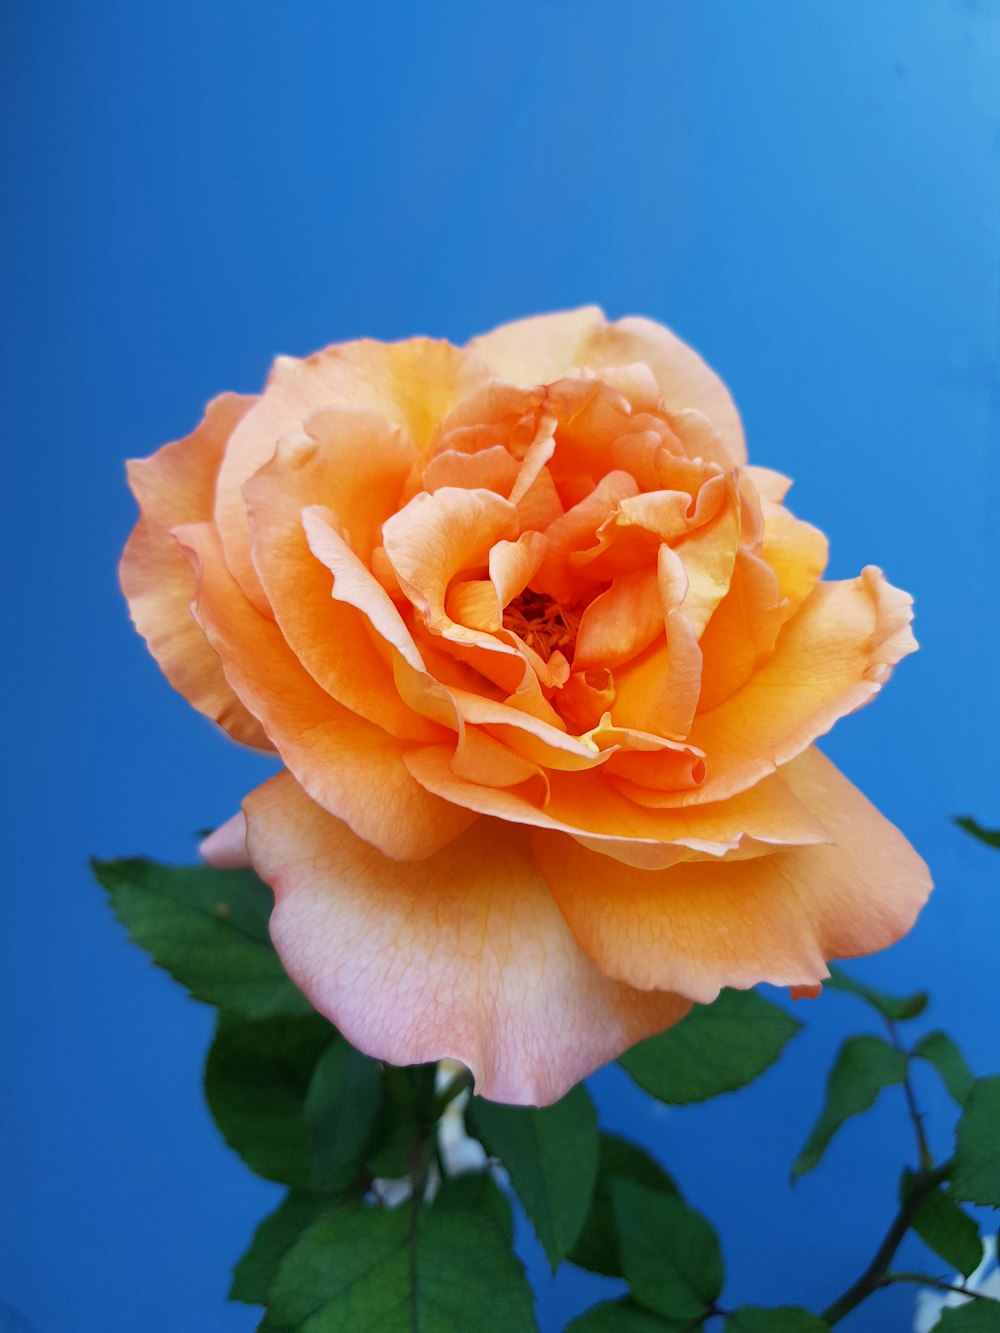 Hình ảnh hoa hồng cam được chụp tinh tế và chân thực để tái hiện vẻ đẹp hoàn hảo của chúng. Chúng ta sẽ được trải nghiệm một thế giới đầy màu sắc và tuyệt diệu khi chiêm ngưỡng những bức ảnh này. Hãy để những bông hoa hồng cam đưa bạn đến một thế giới đầy ngẫu hứng và đầy màu sắc nhé!